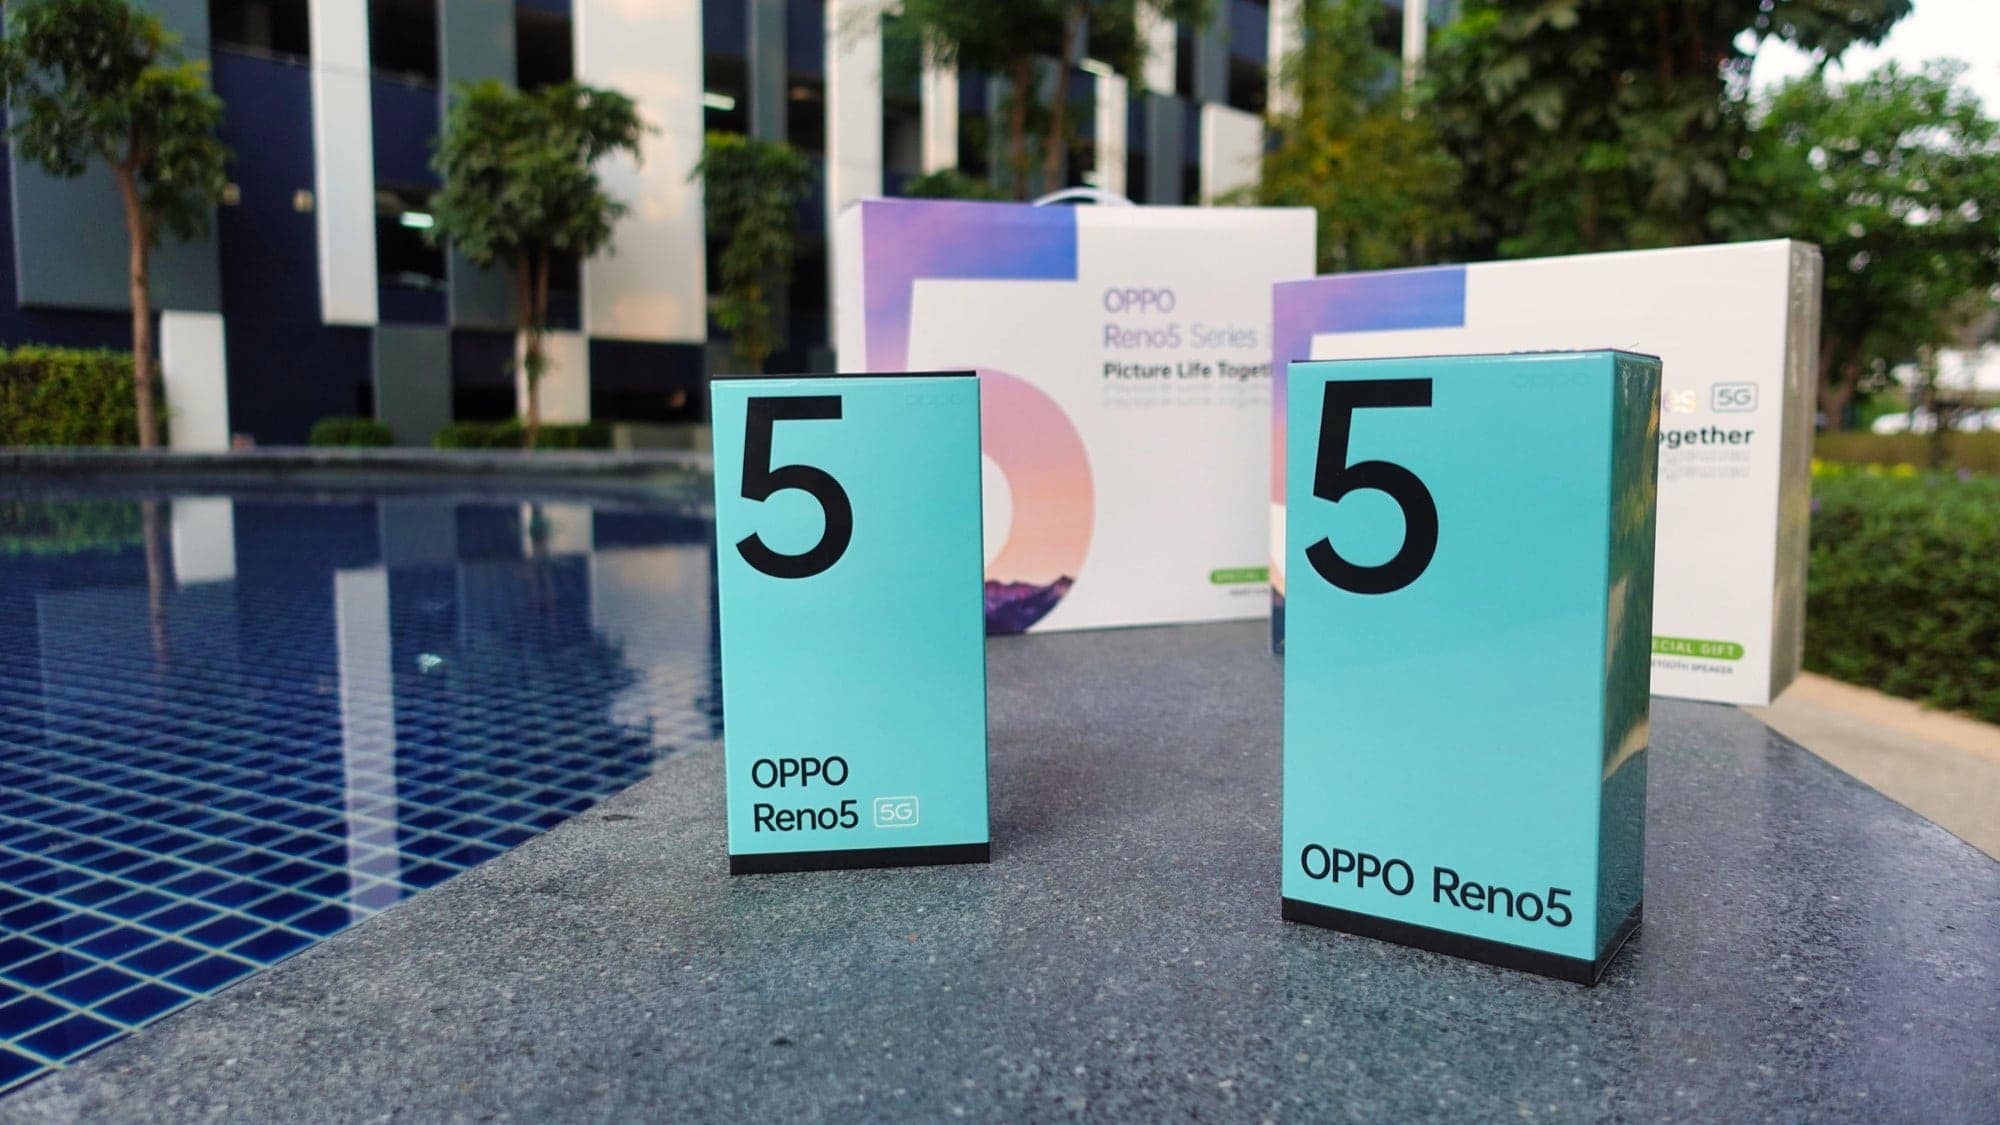 รีวิว OPPO Reno5 Series 5G สมาร์ทโฟนเพื่อการถ่ายวิดีโอ Portrait กับดีไซน์ใหม่นำเทรนด์ 5